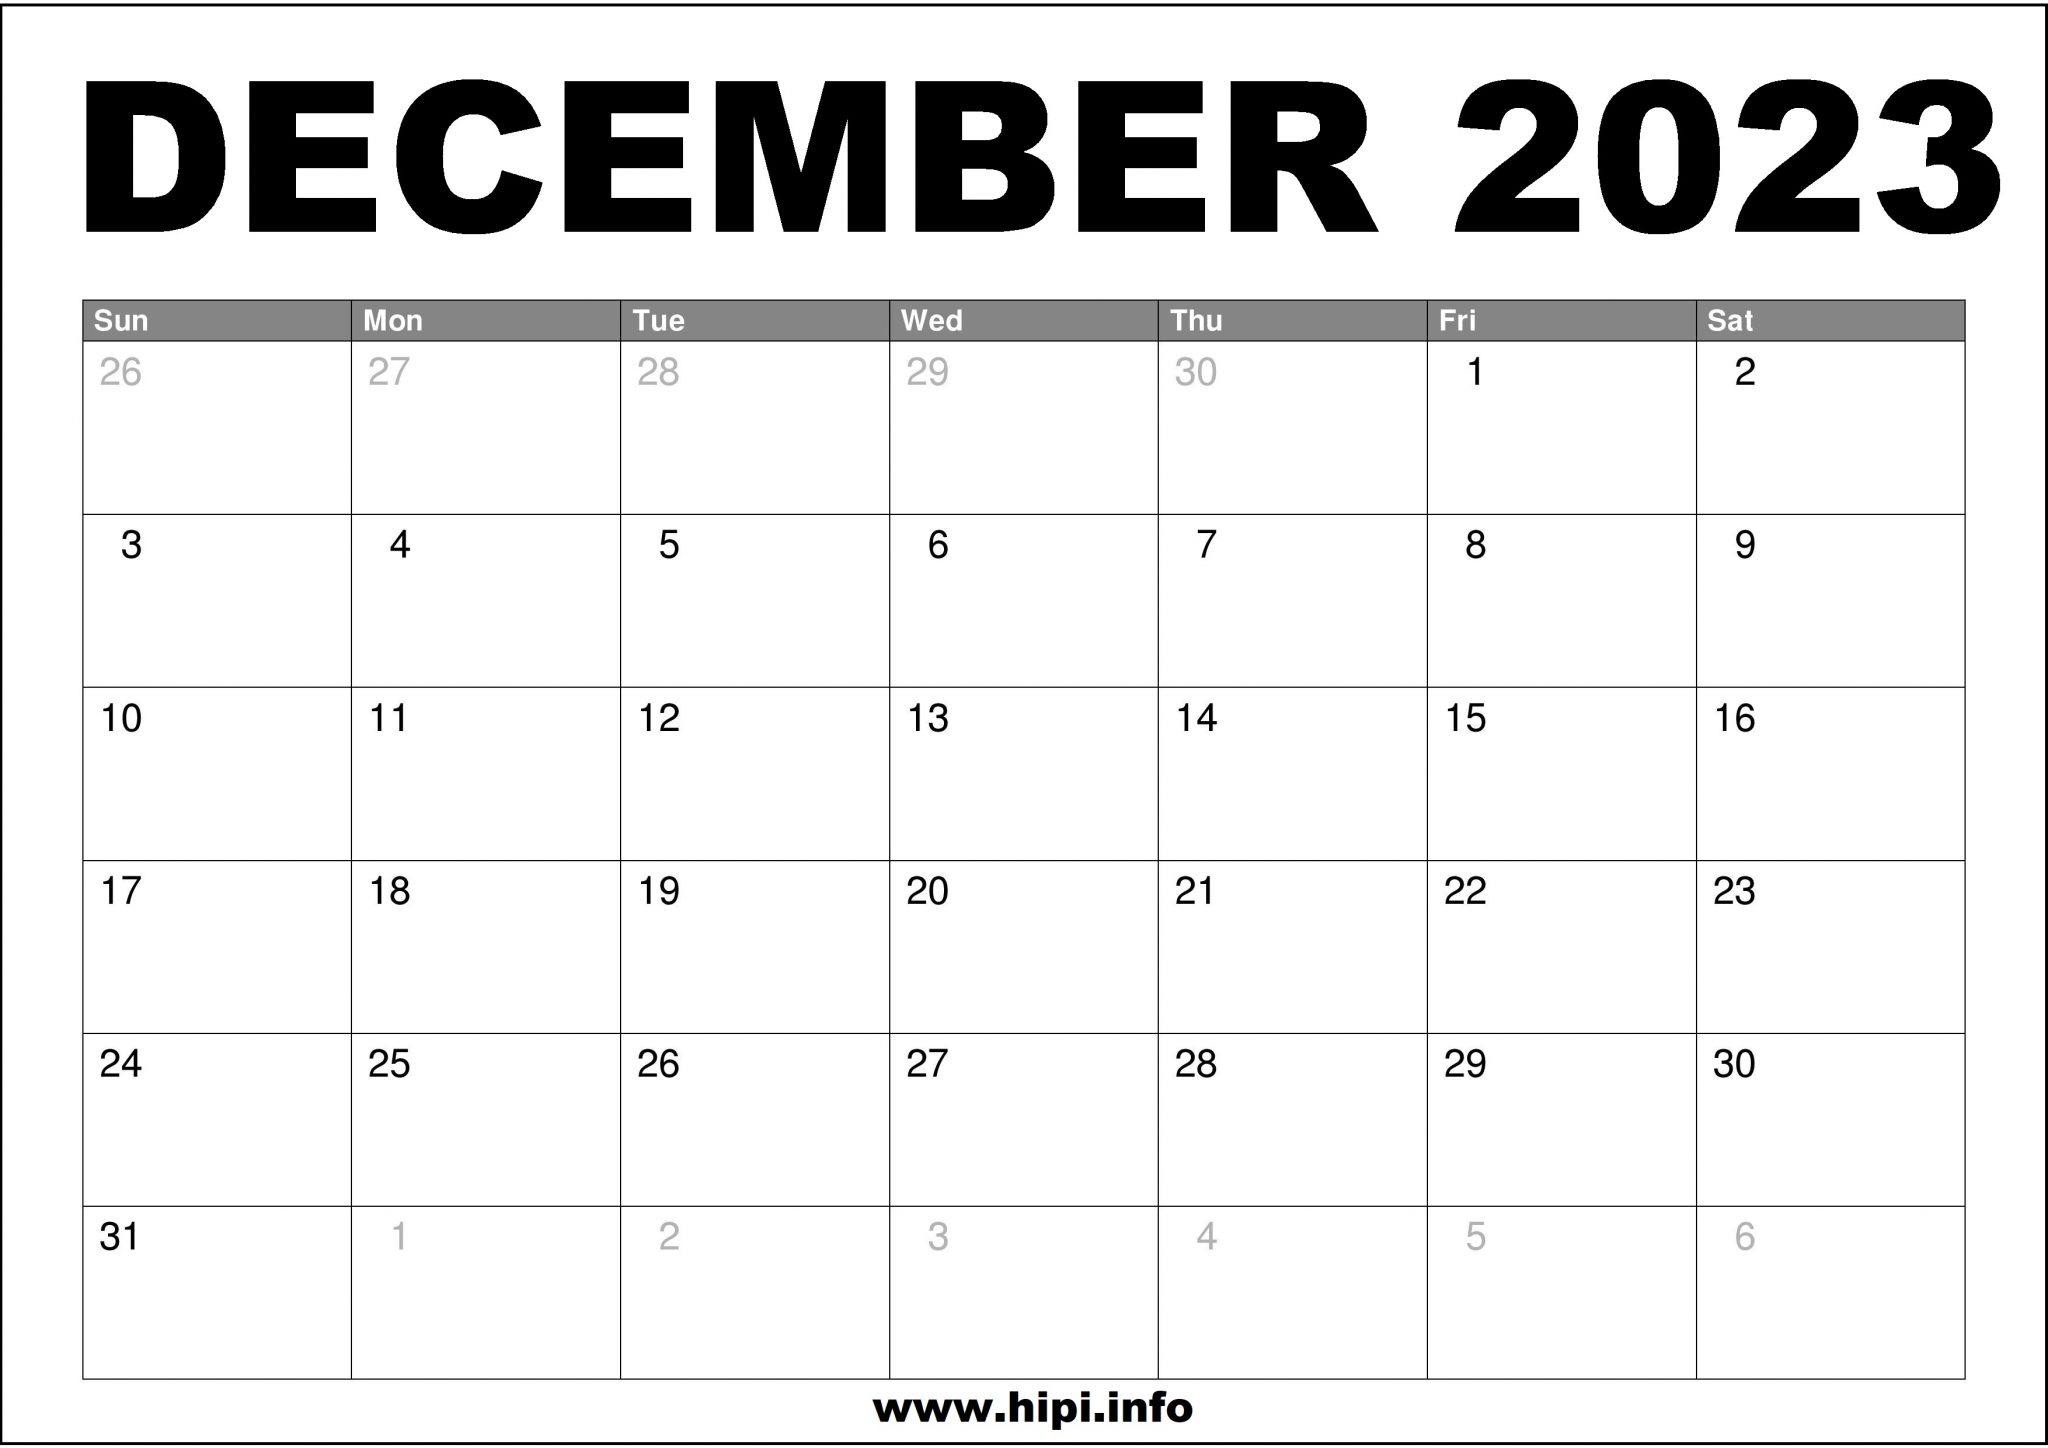 december-2023-calendar-printable-free-hipi-info